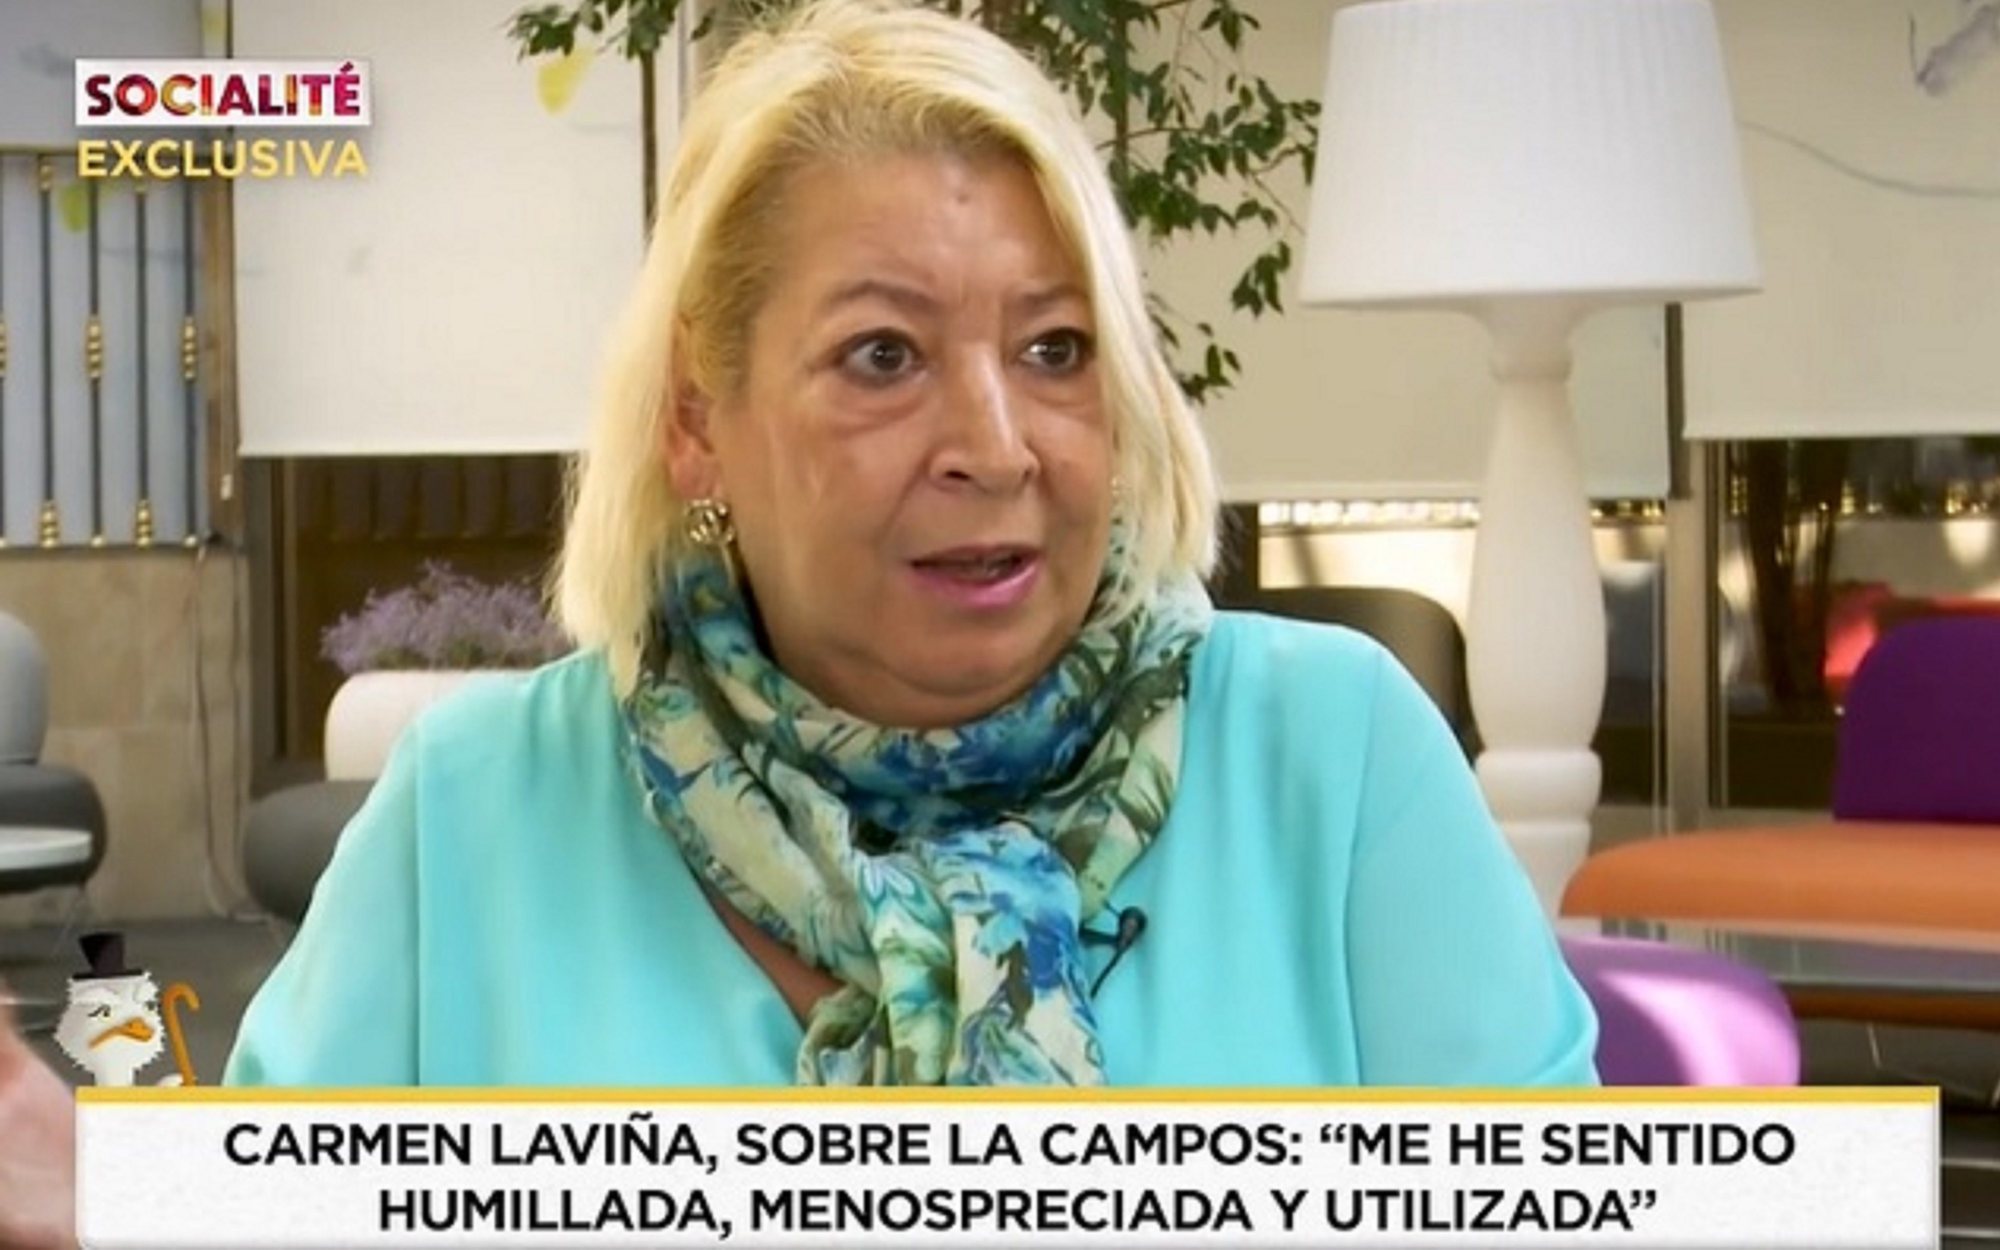 Una excompañera de María Teresa Campos carga contra ella: "Es una de las peores personas que he conocido"